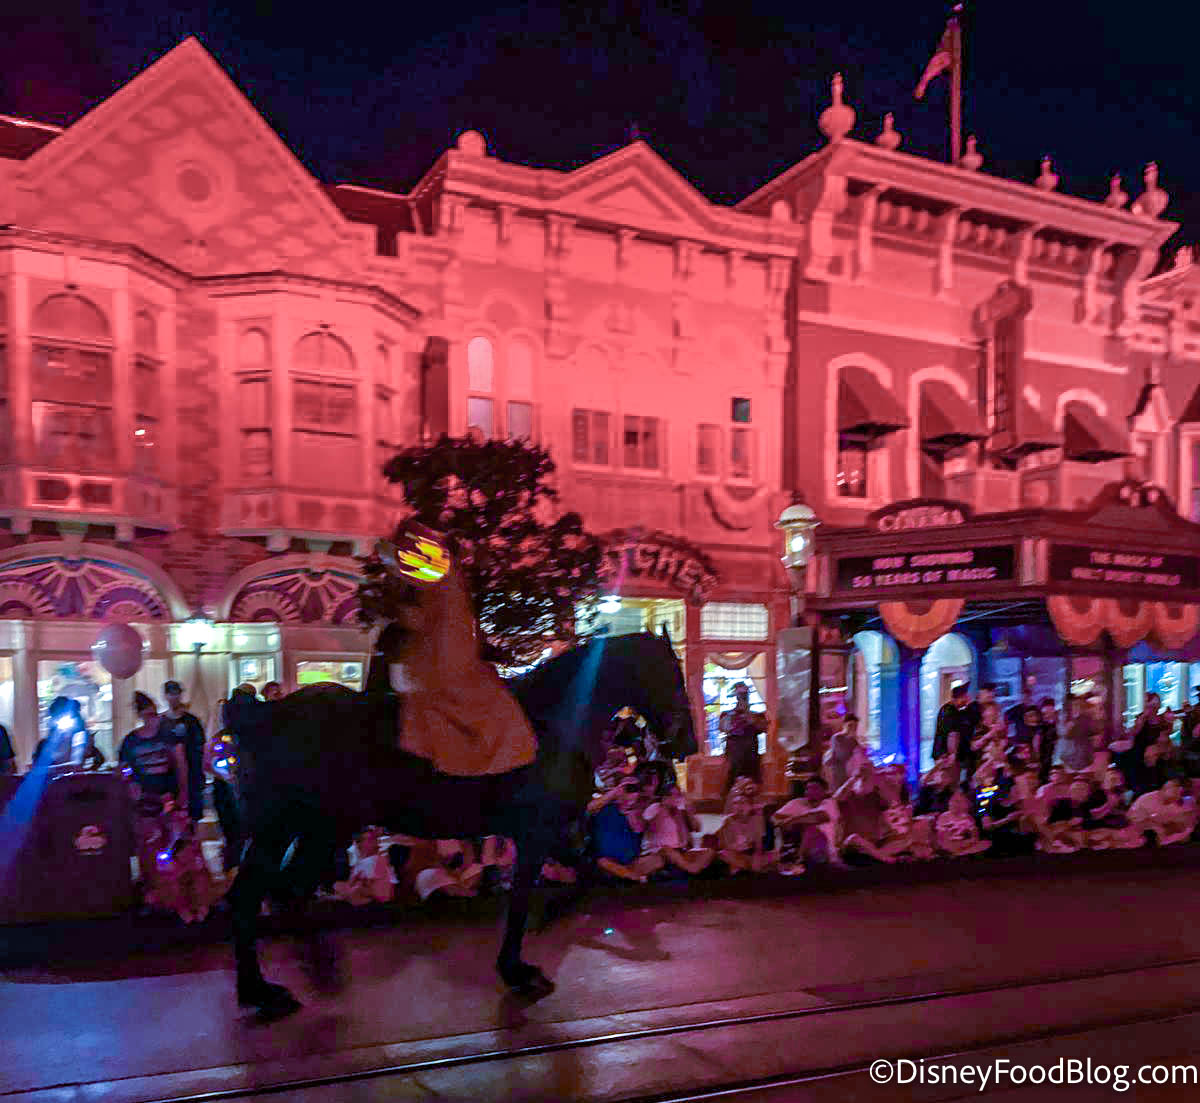 VIDEO The Headless Horseman Rides Again at Mickey’s NotSoScary